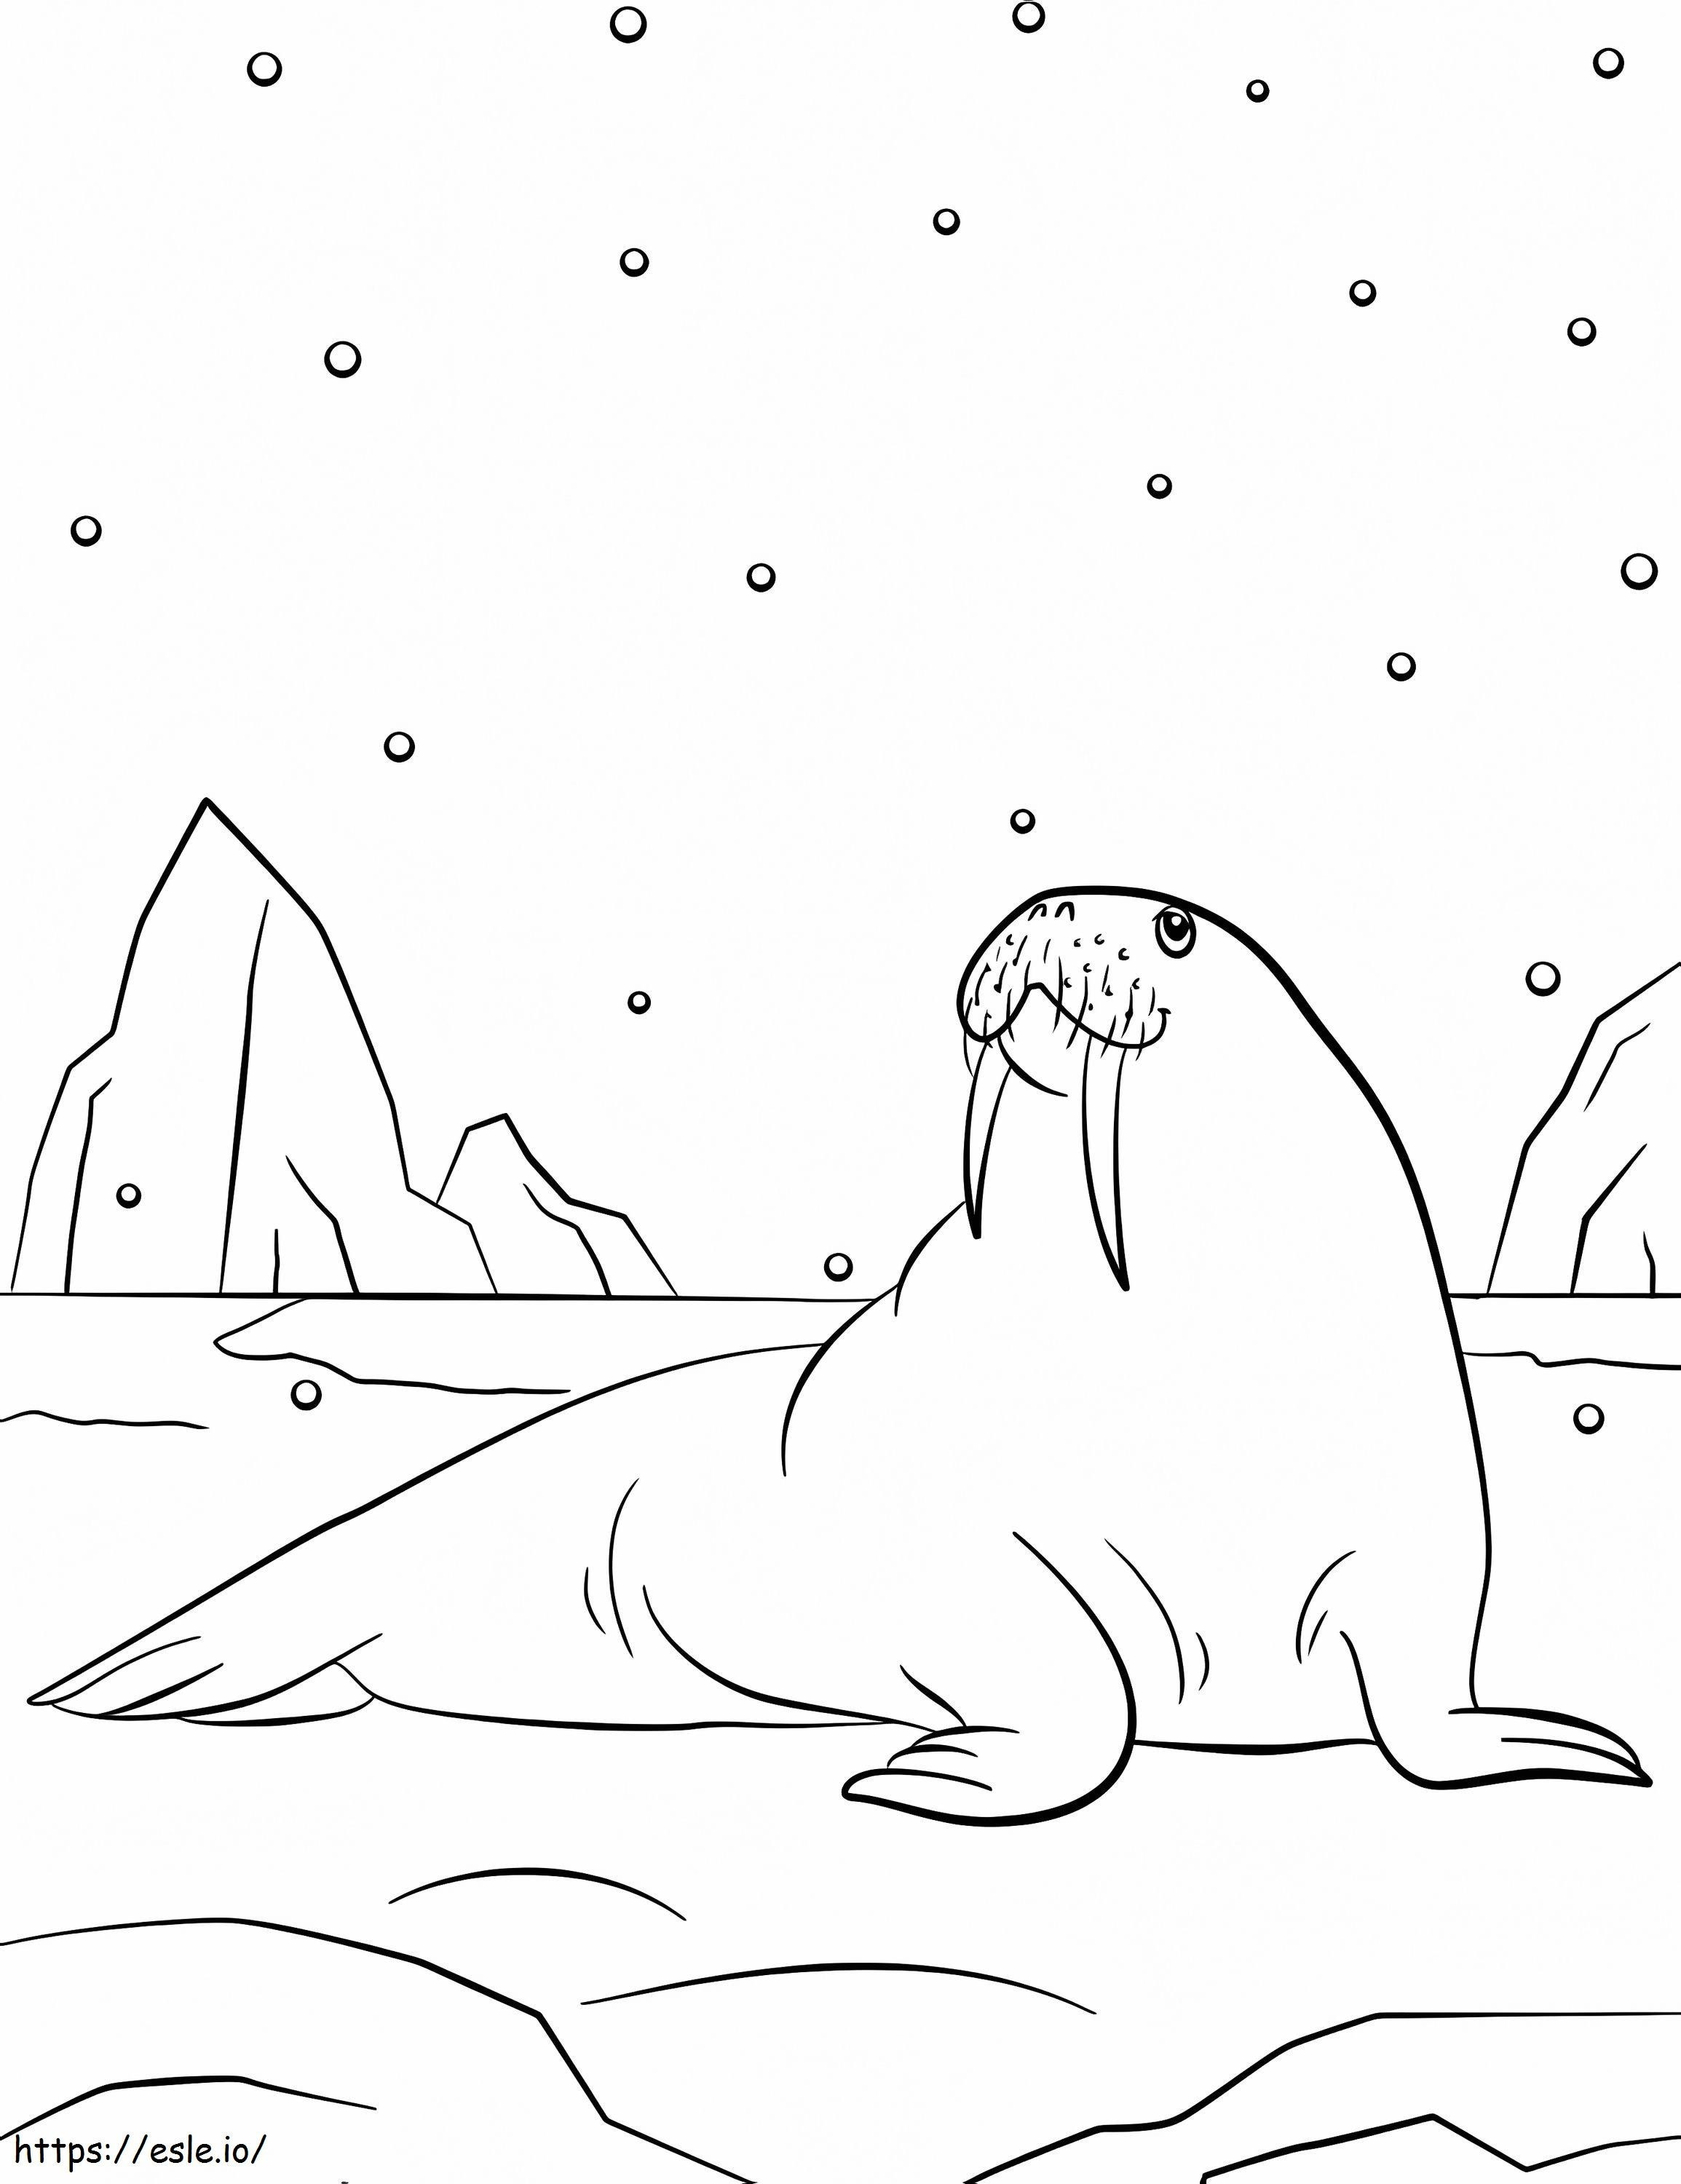 Walross und Schneeflocken ausmalbilder